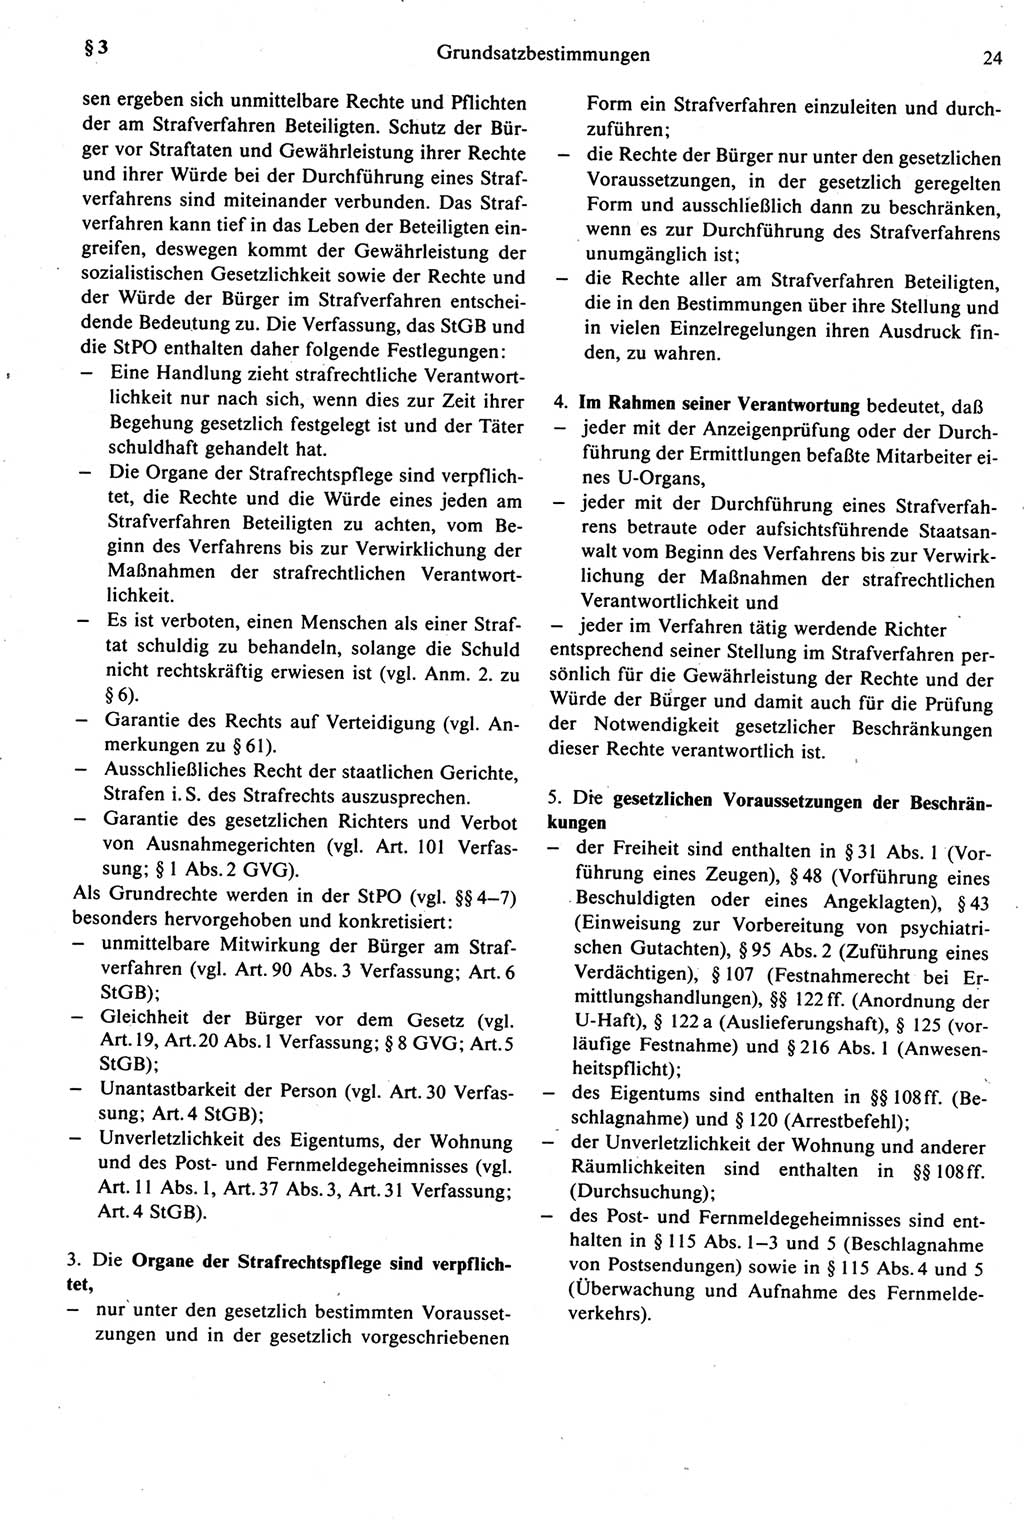 Strafprozeßrecht der DDR [Deutsche Demokratische Republik], Kommentar zur Strafprozeßordnung (StPO) 1987, Seite 24 (Strafprozeßr. DDR Komm. StPO 1987, S. 24)